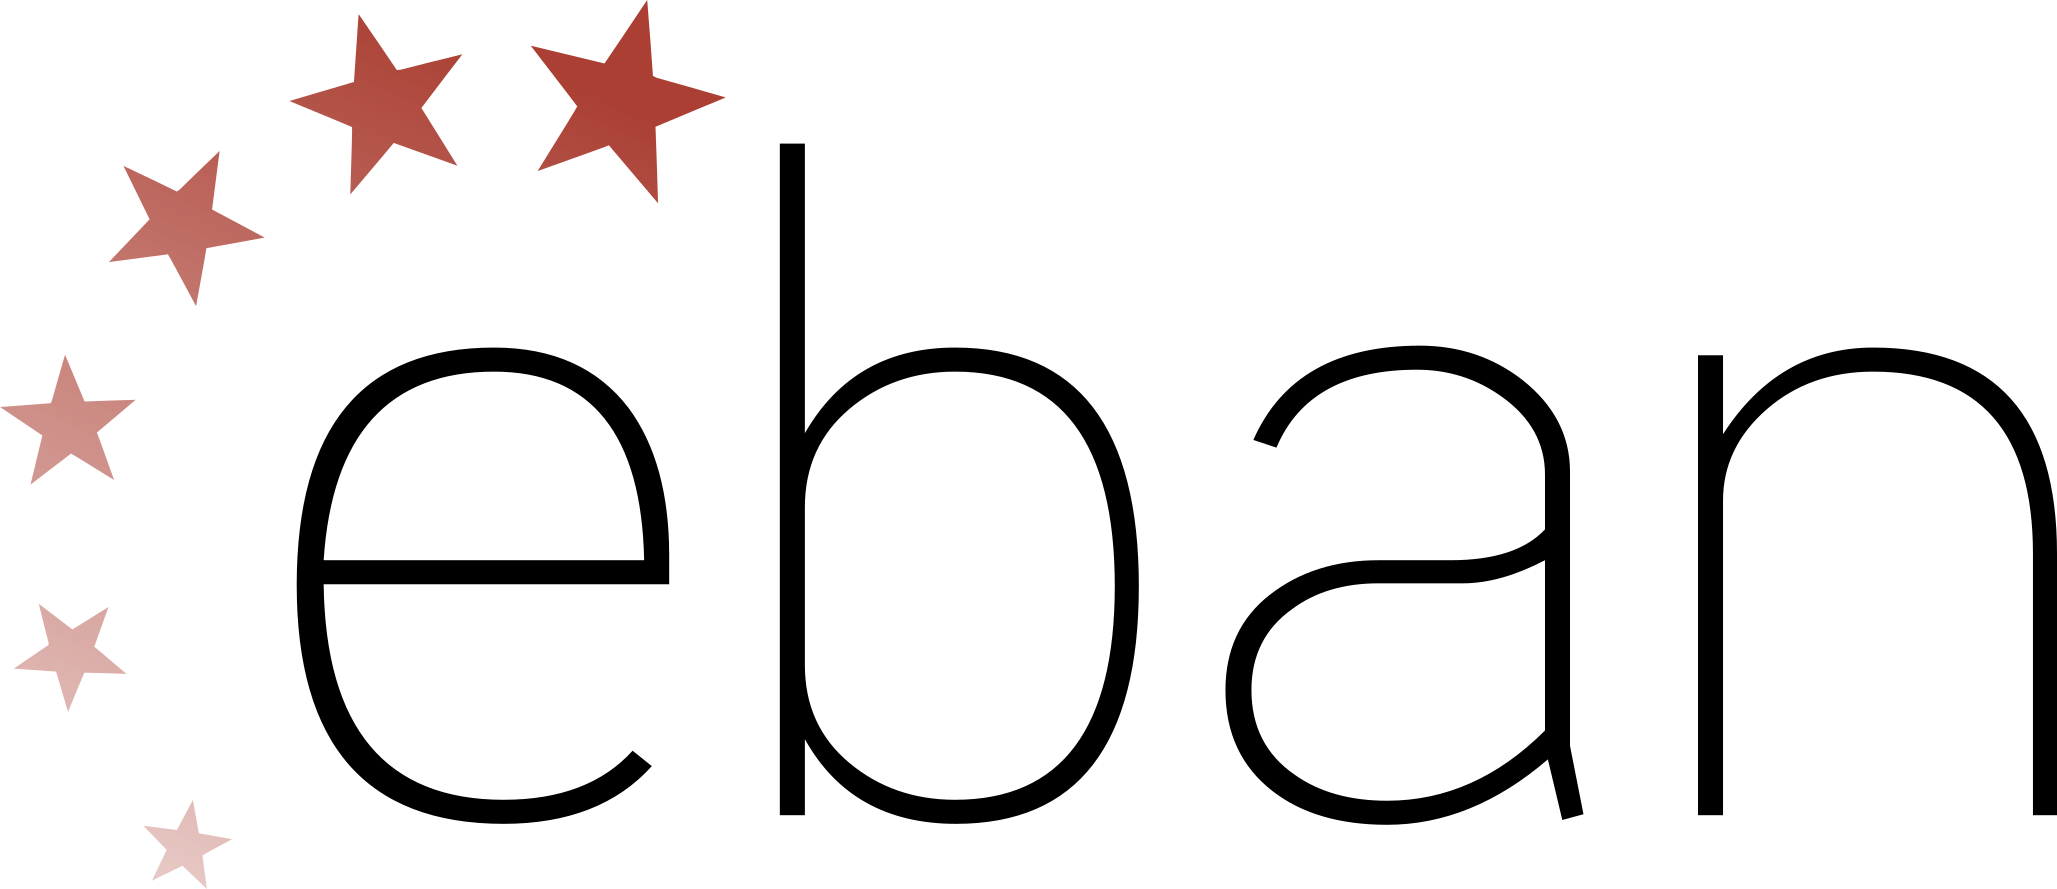 Eban logo